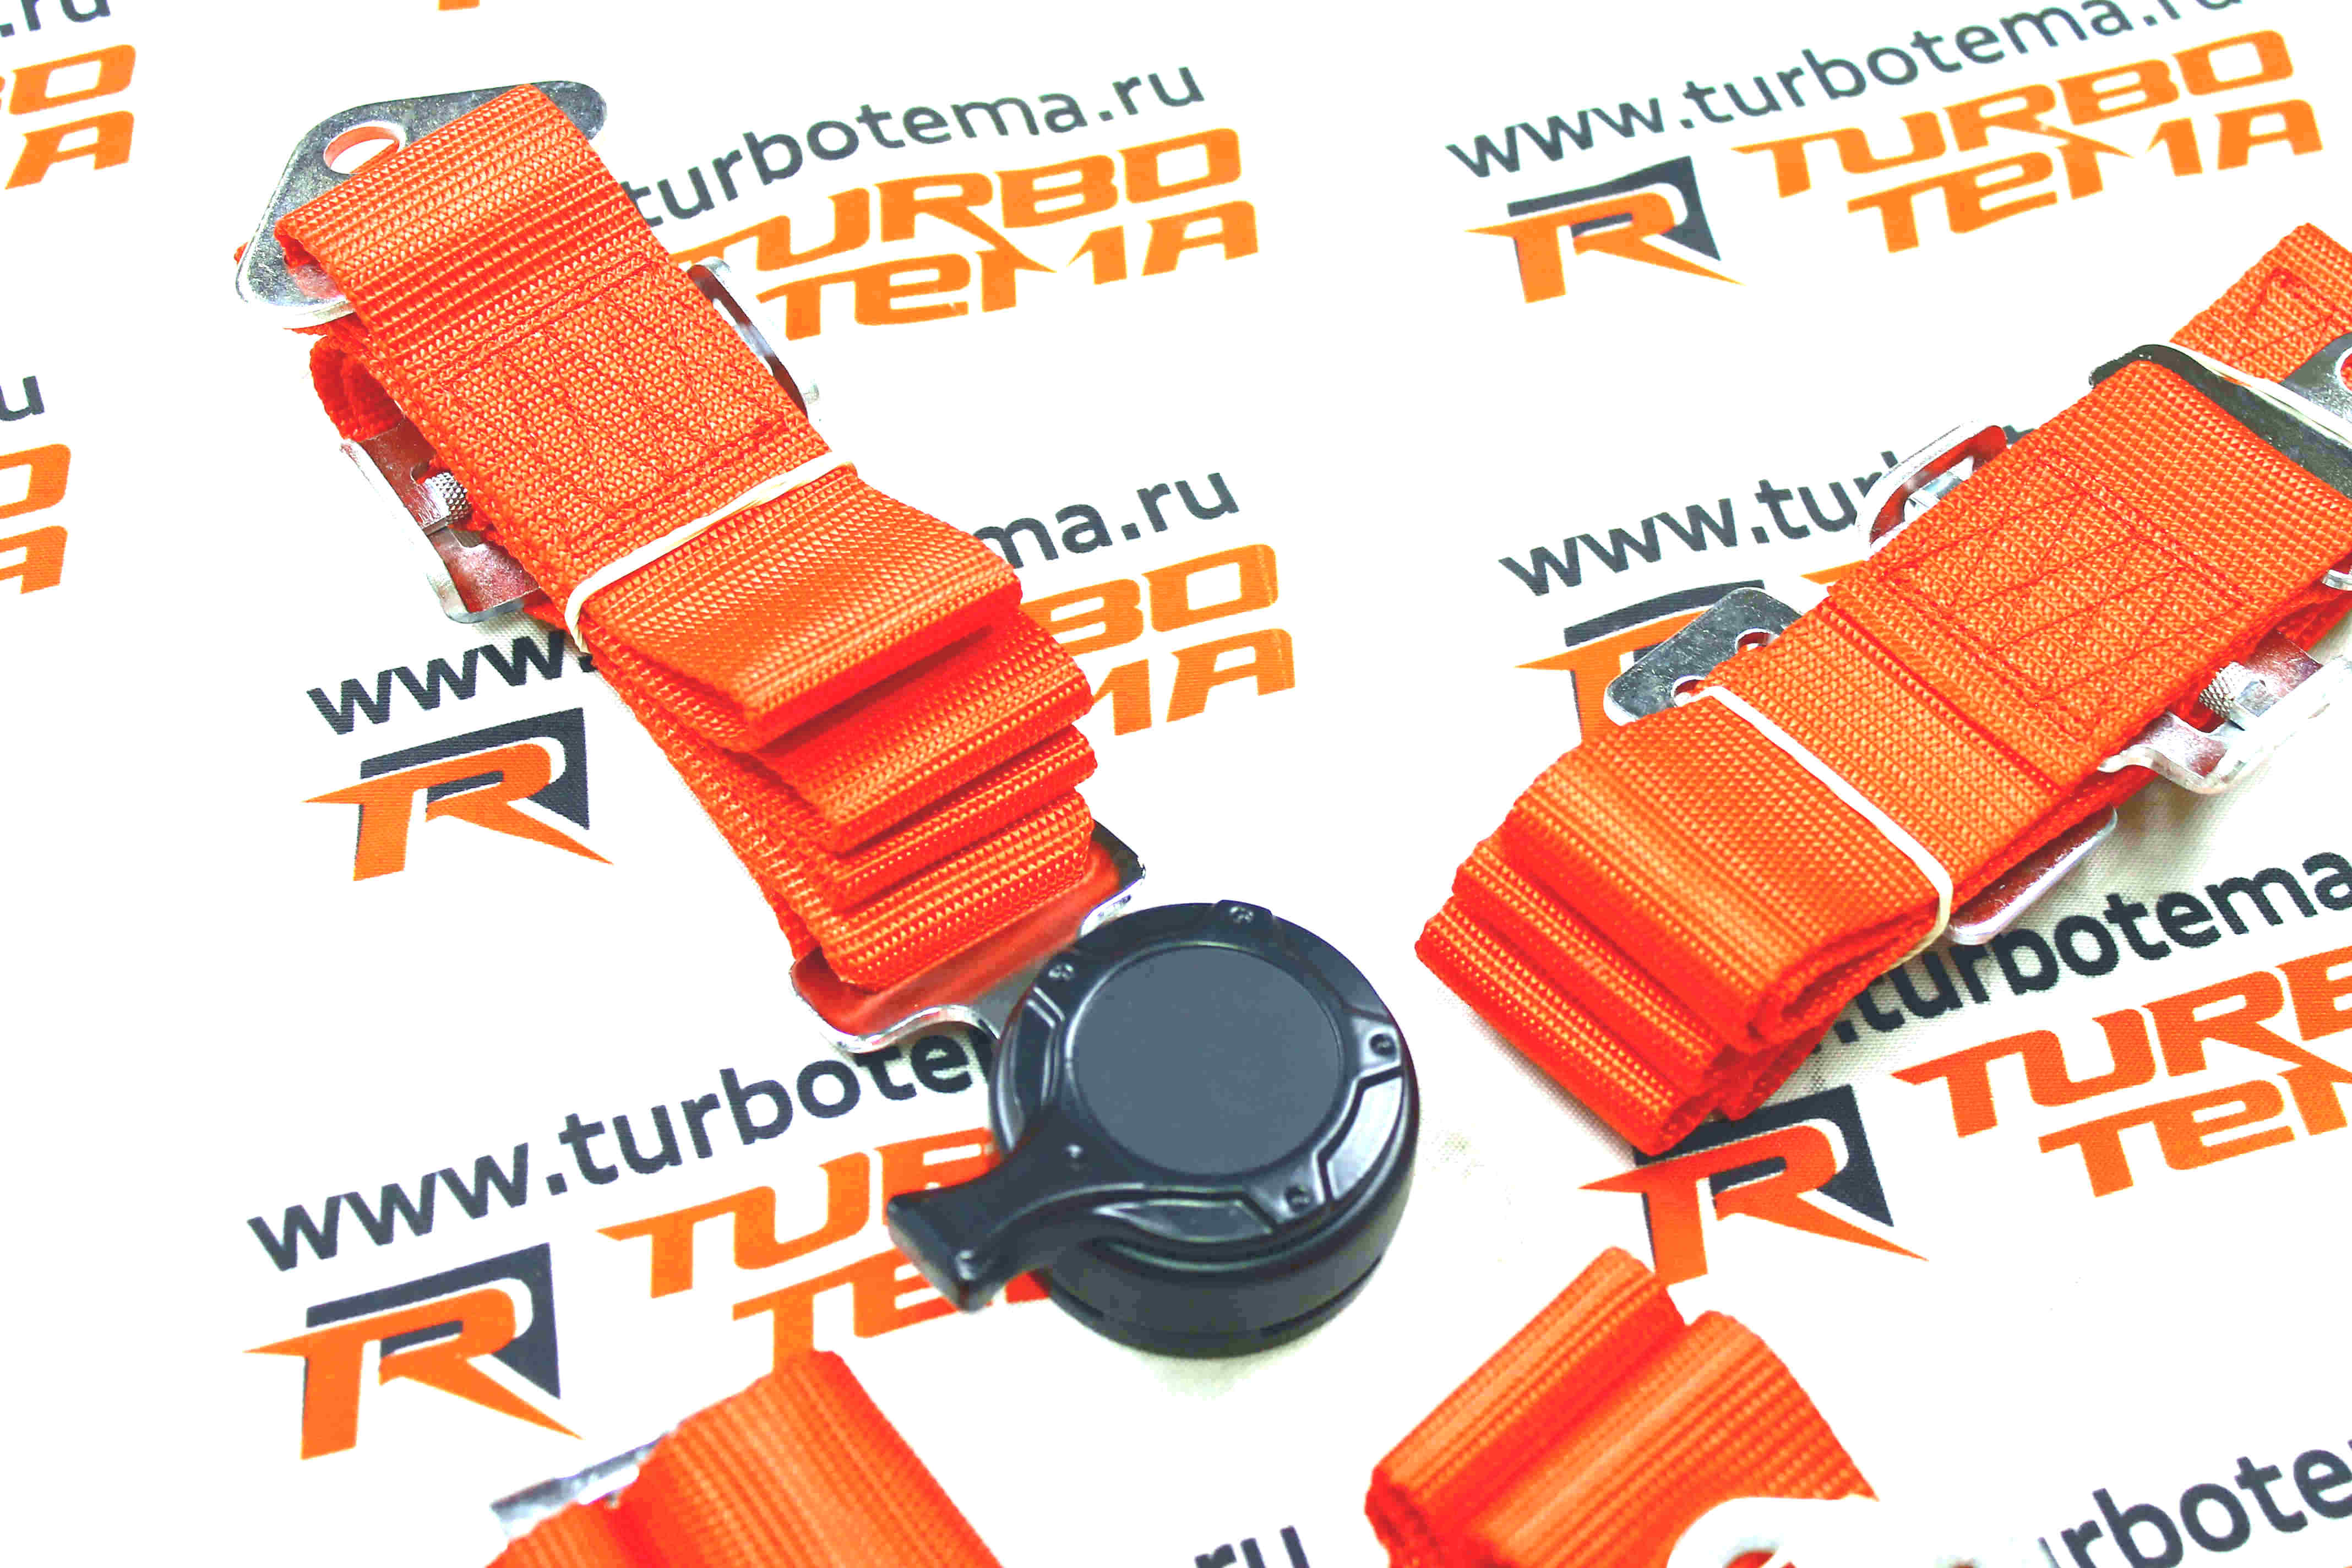 Ремни безопасности "TURBOTEMA" 4-х точечные, 2" ширина, быстросъемные (красные) JBR4001-4. Фото �4